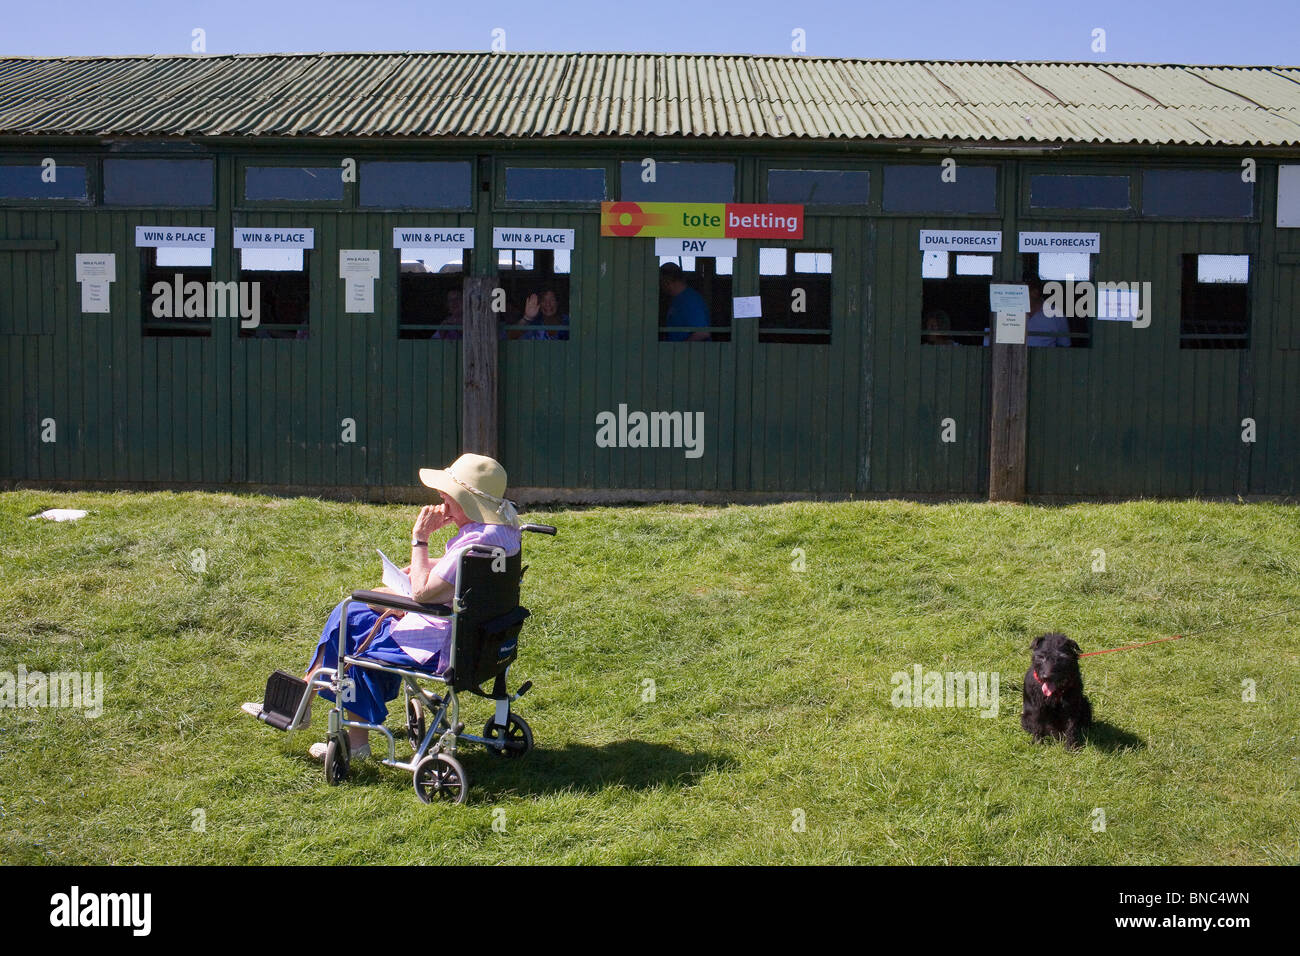 Una vecchia donna si siede su una sedia a rotelle accanto a un cane nella parte anteriore della borsa a una gara in una calda giornata estiva in campagna. Foto Stock